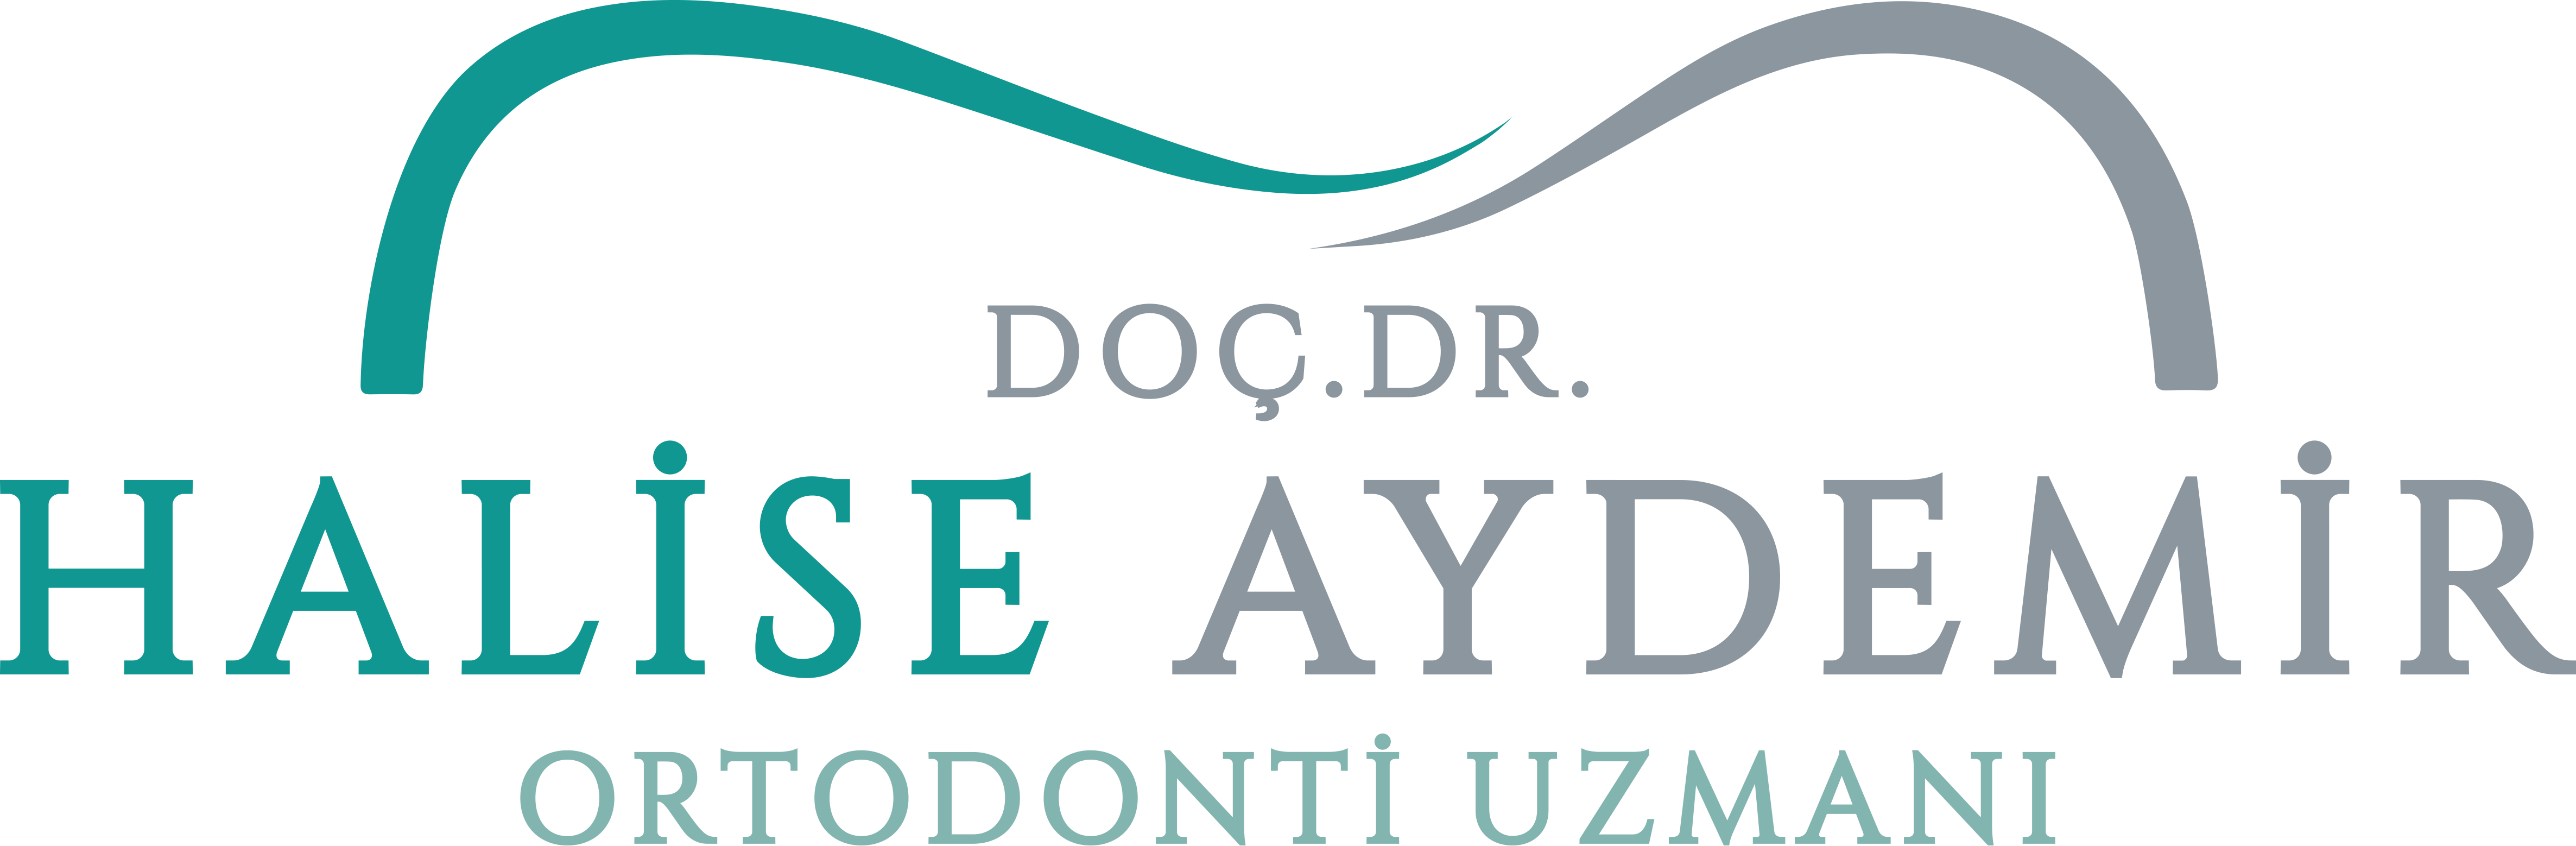 Doc. Dr. Halise Aydemir